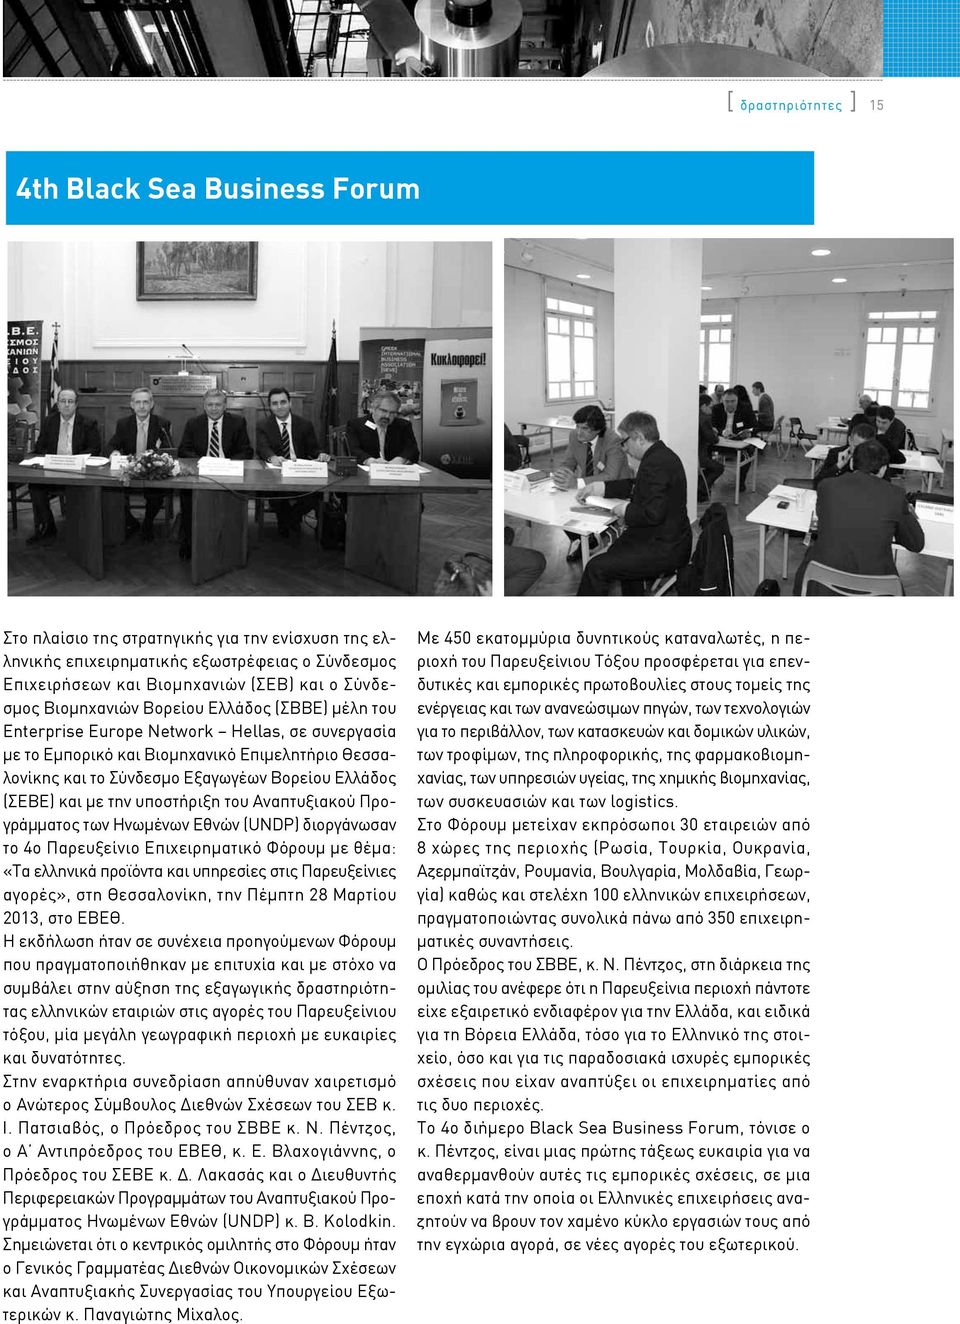 Ελλάδος (ΣΕΒΕ) και με την υποστήριξη του Αναπτυξιακού Προγράμματος των Ηνωμένων Εθνών (UNDP) διοργάνωσαν το 4ο Παρευξείνιο Επιχειρηματικό Φόρουμ με θέμα: «Τα ελληνικά προϊόντα και υπηρεσίες στις